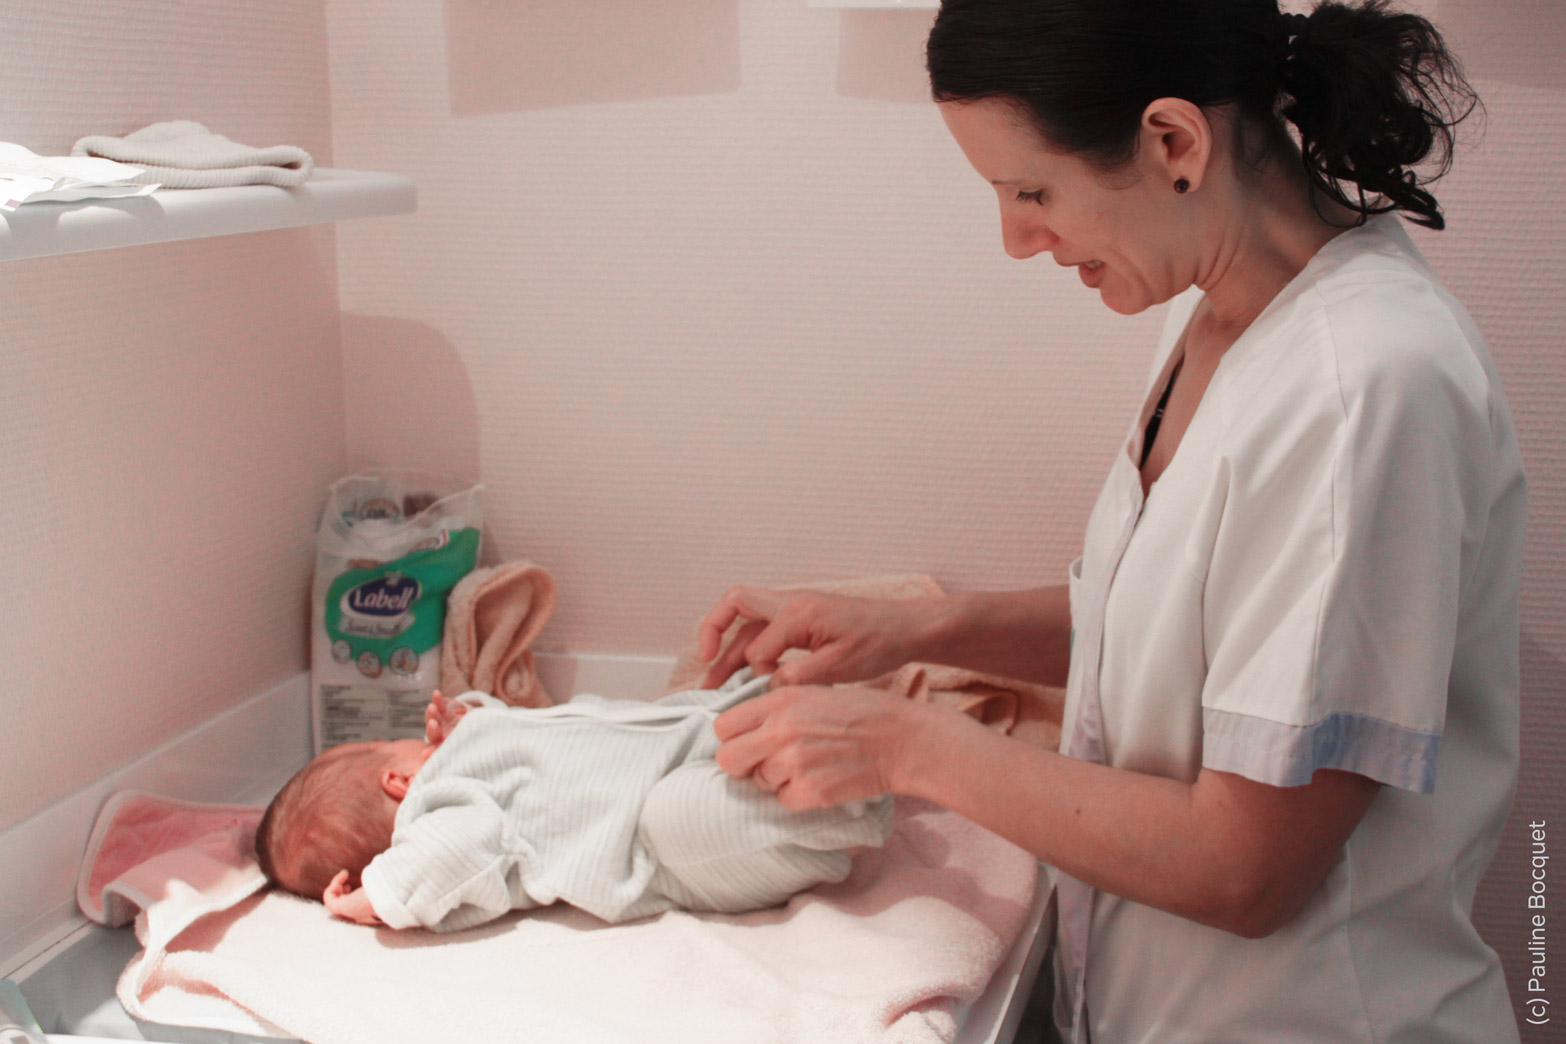 Premières nuits à la maternité : comment ça se passe ?